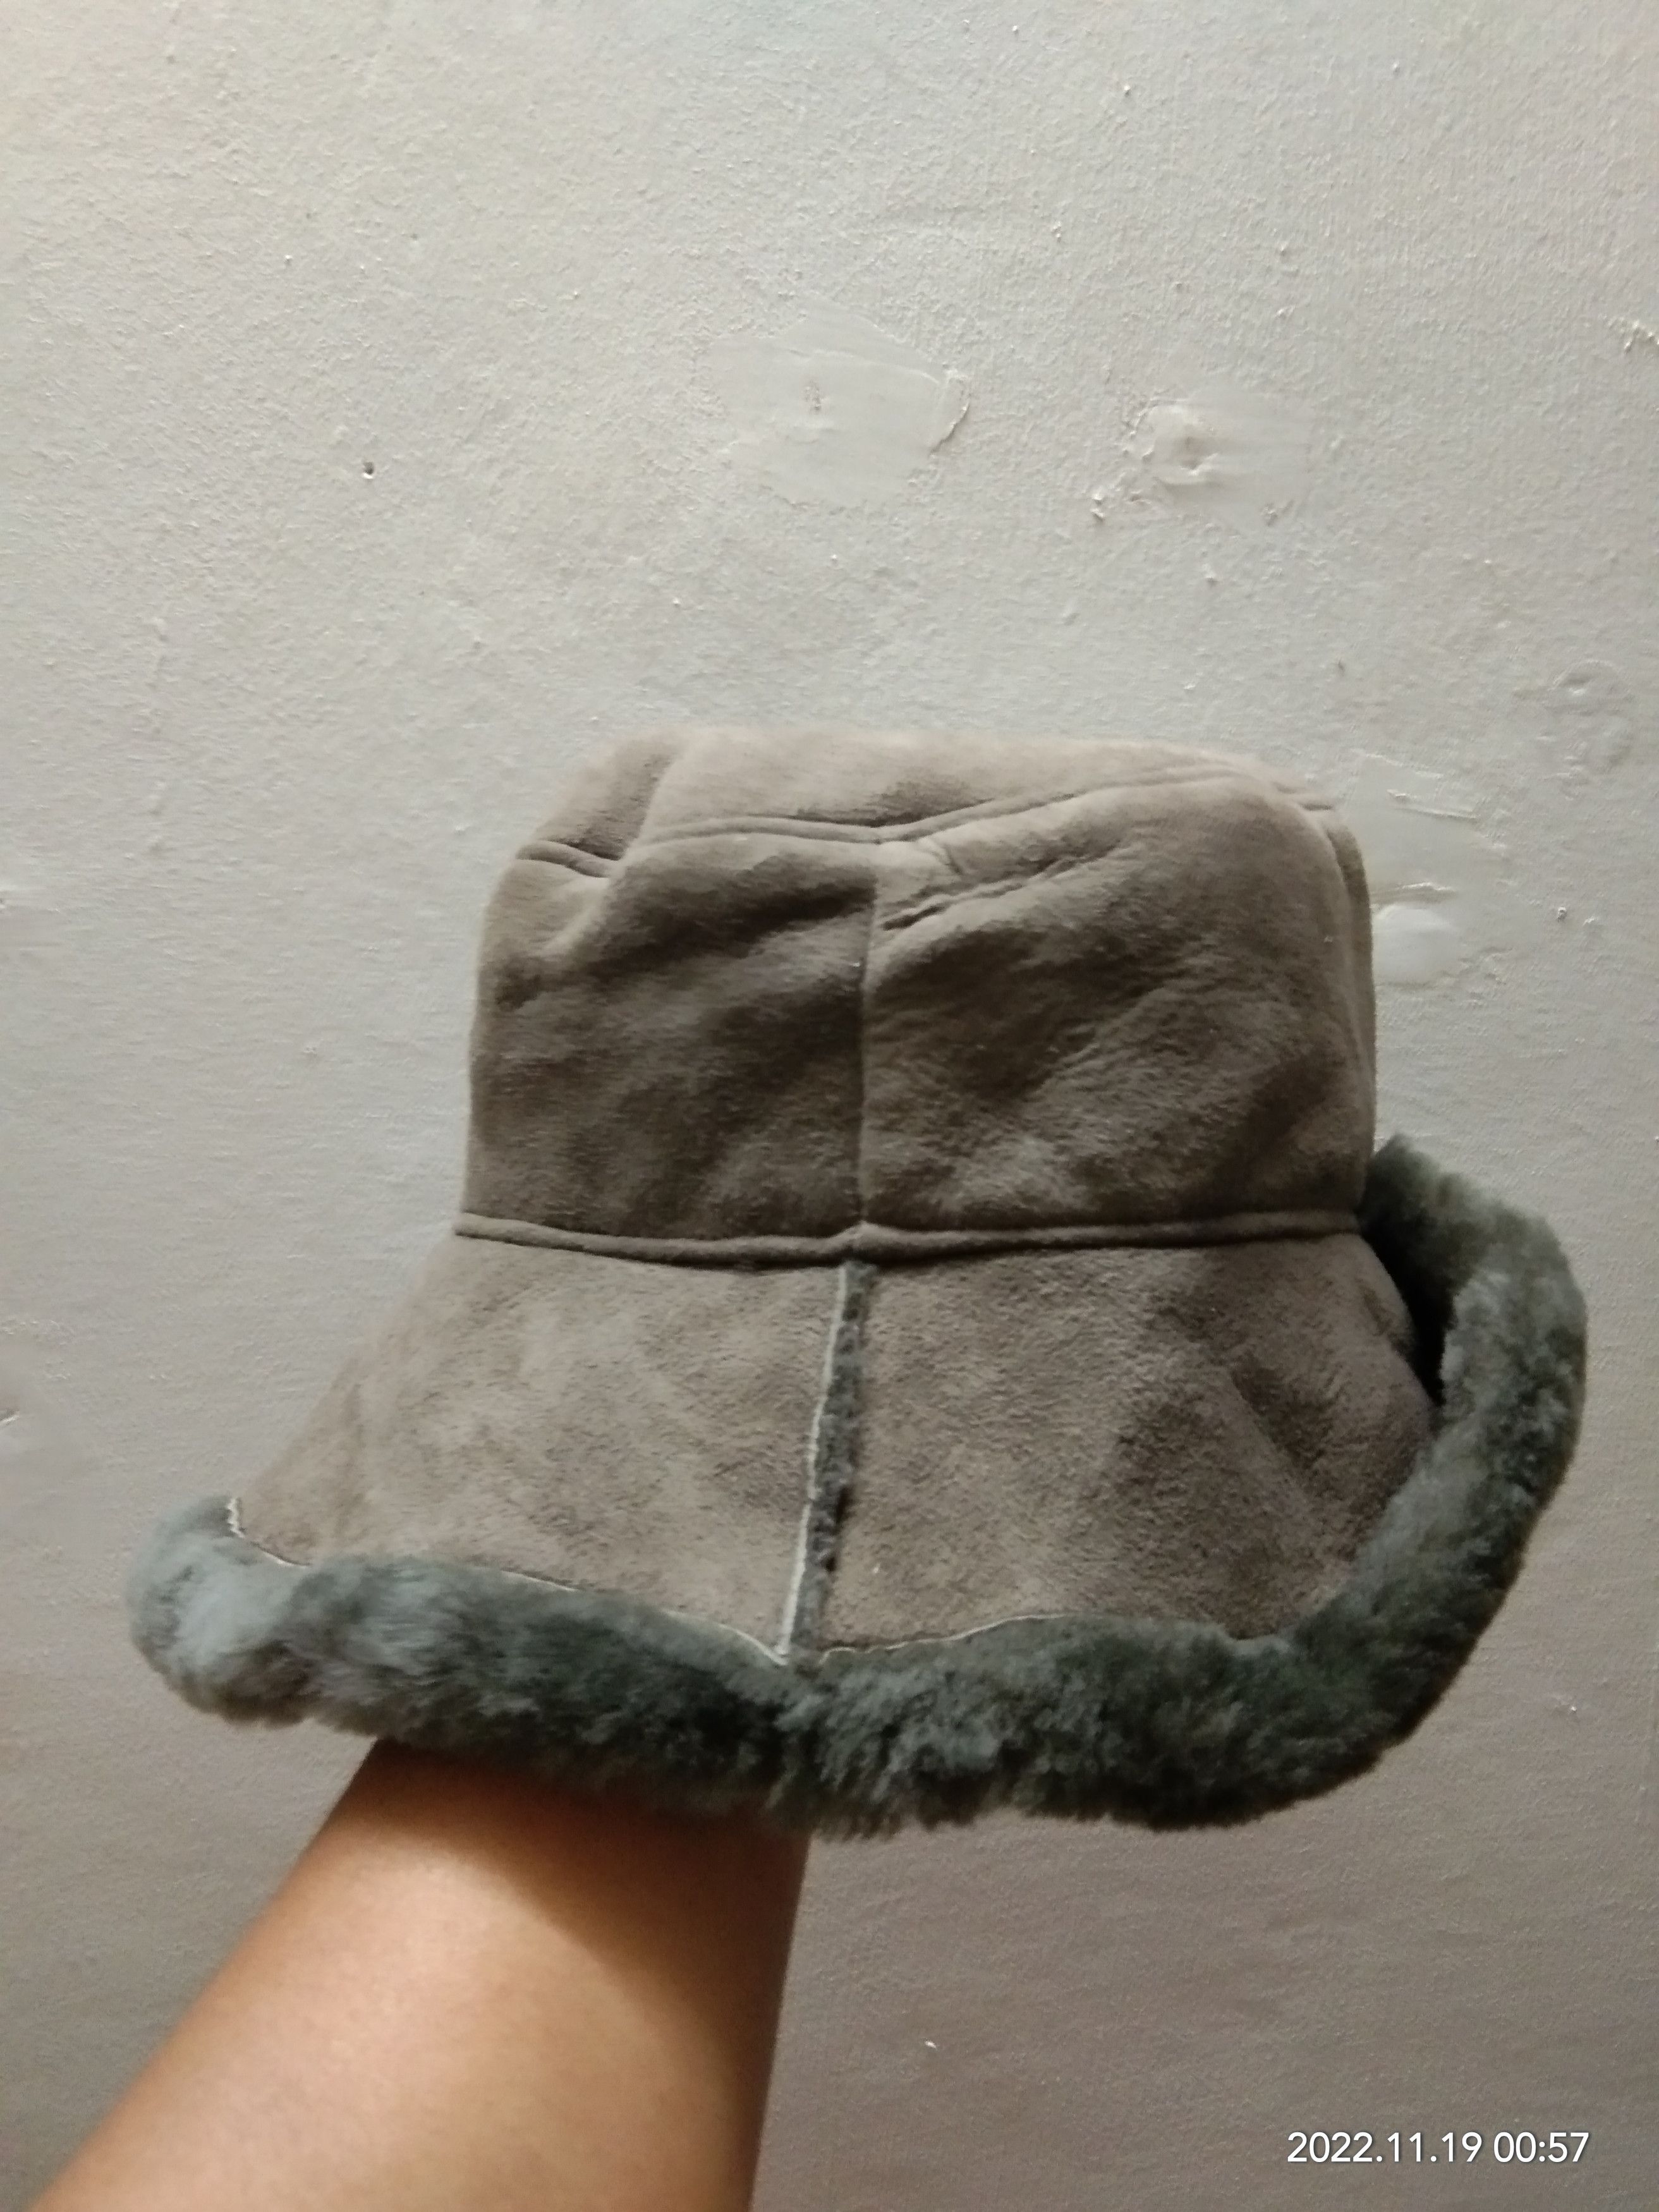 Leather - OWEN BARRY SHEEPSKIN HAT - 5